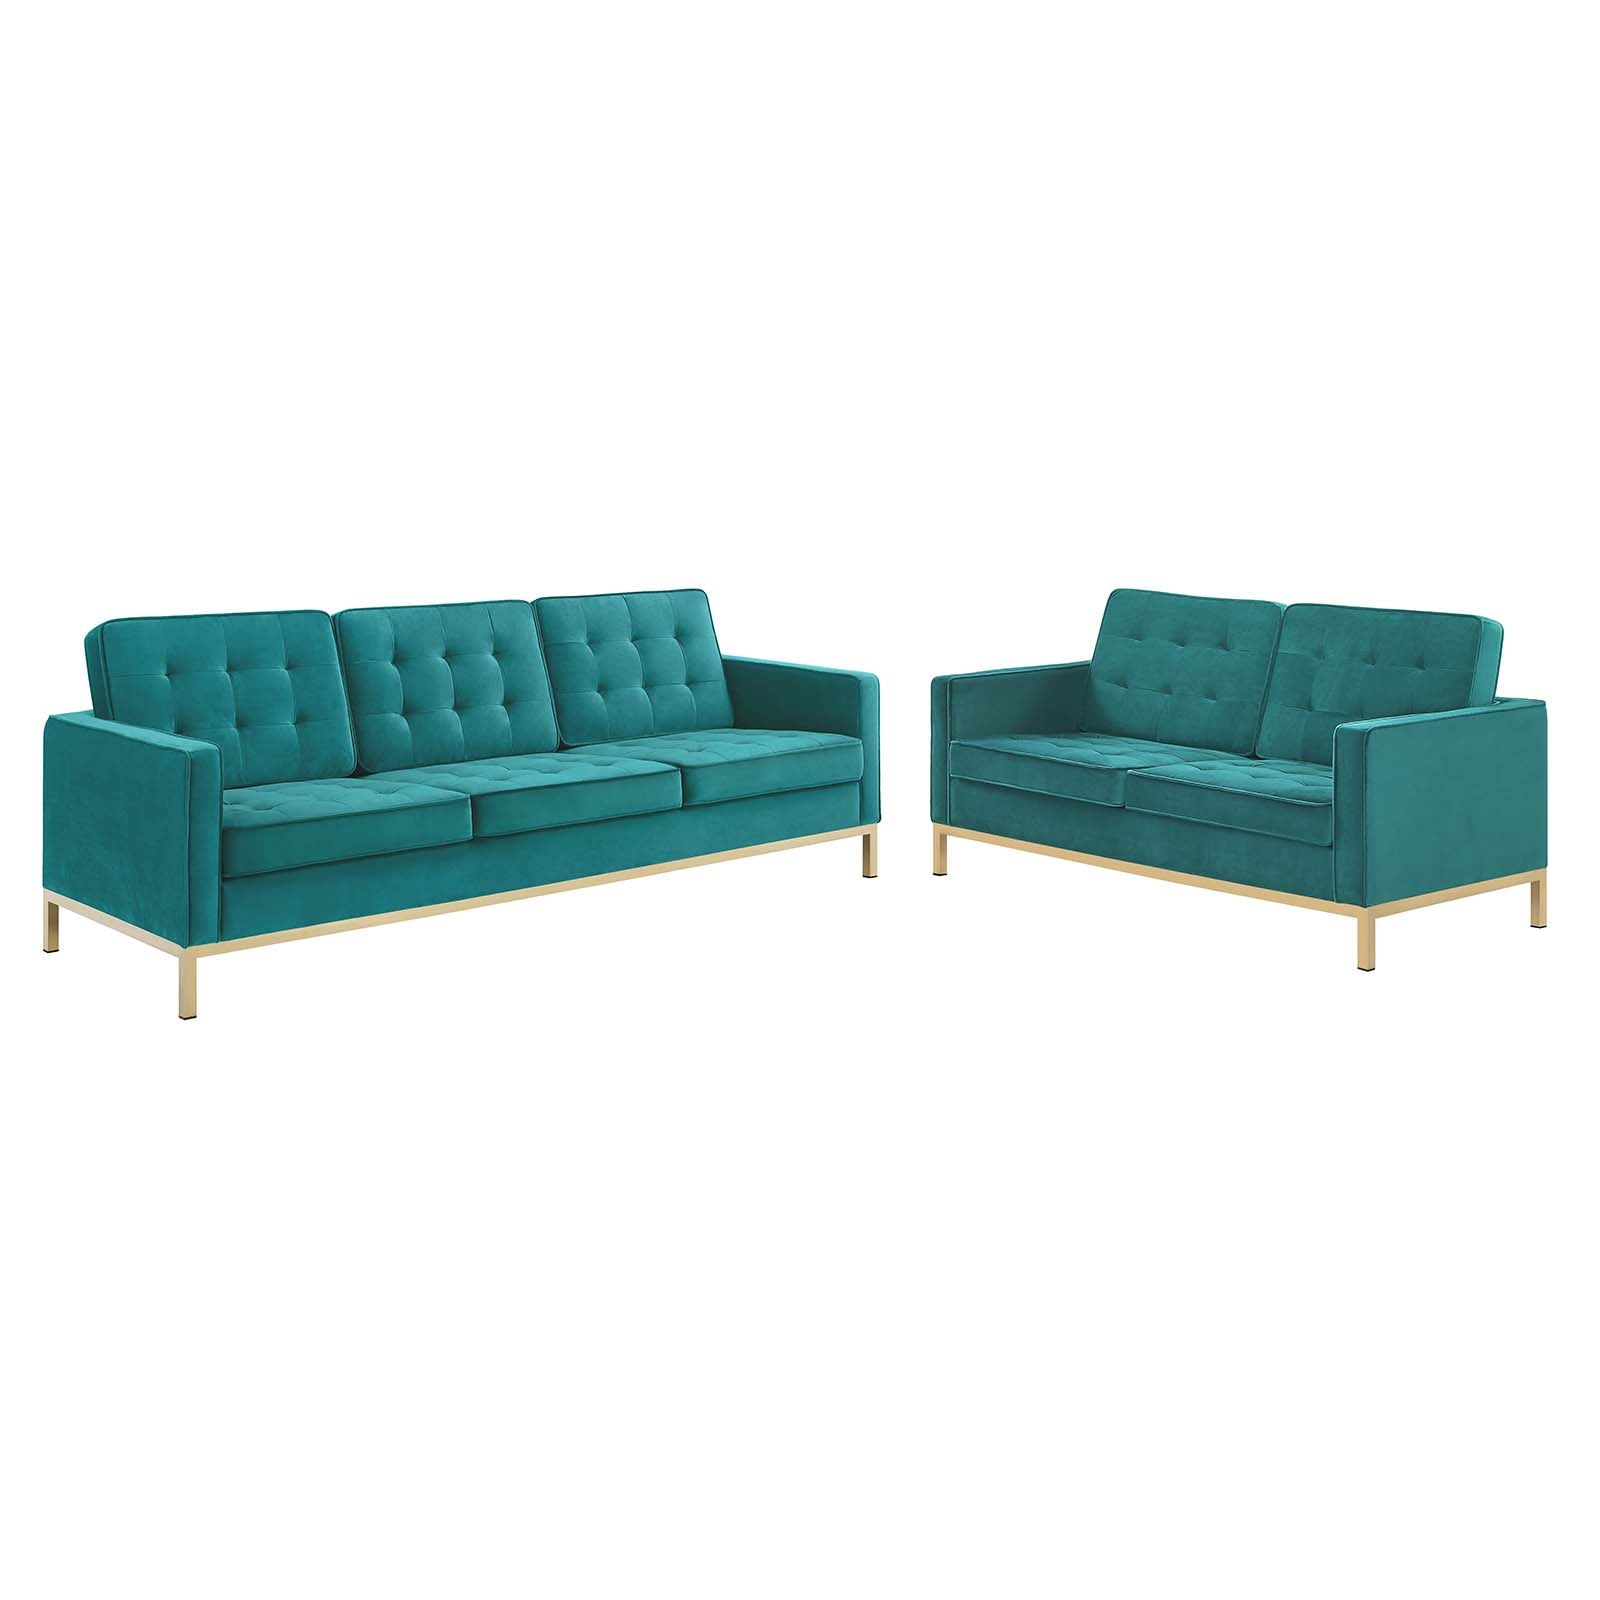 Modway Living Room Sets - Loft Gold Stainless Steel Leg Performance Velvet Sofa and Loveseat Set Gold Teal